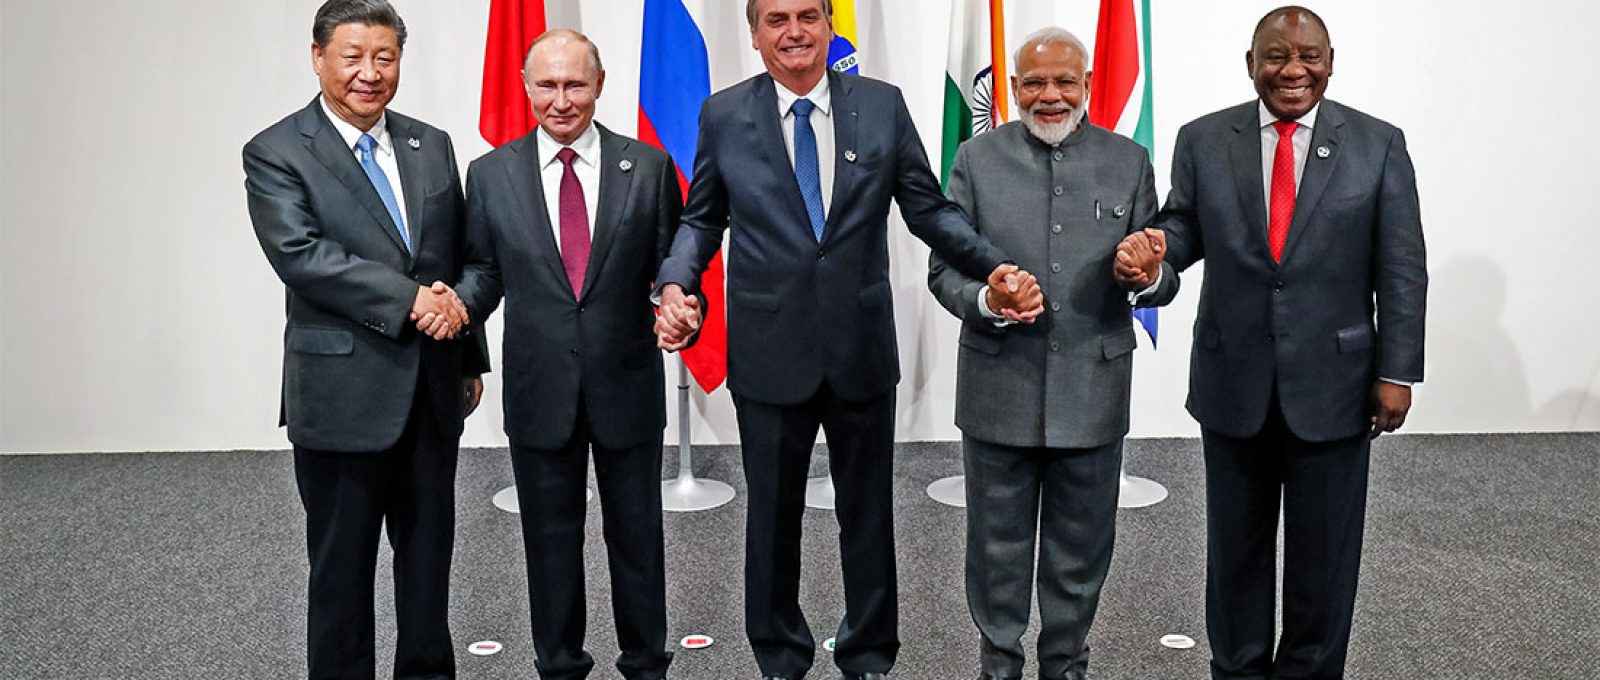 Os líderes dos países membros do BRICS: Xi Jinping, da China, Vladimir Putin, da Rússia, Jair Bolsonaro, do Brasil, Narendra Modi, da Índia e Cyril Ramaphosa, da África do Sul(Alan Santos/Palácio do Planalto/CC BY 2.0).